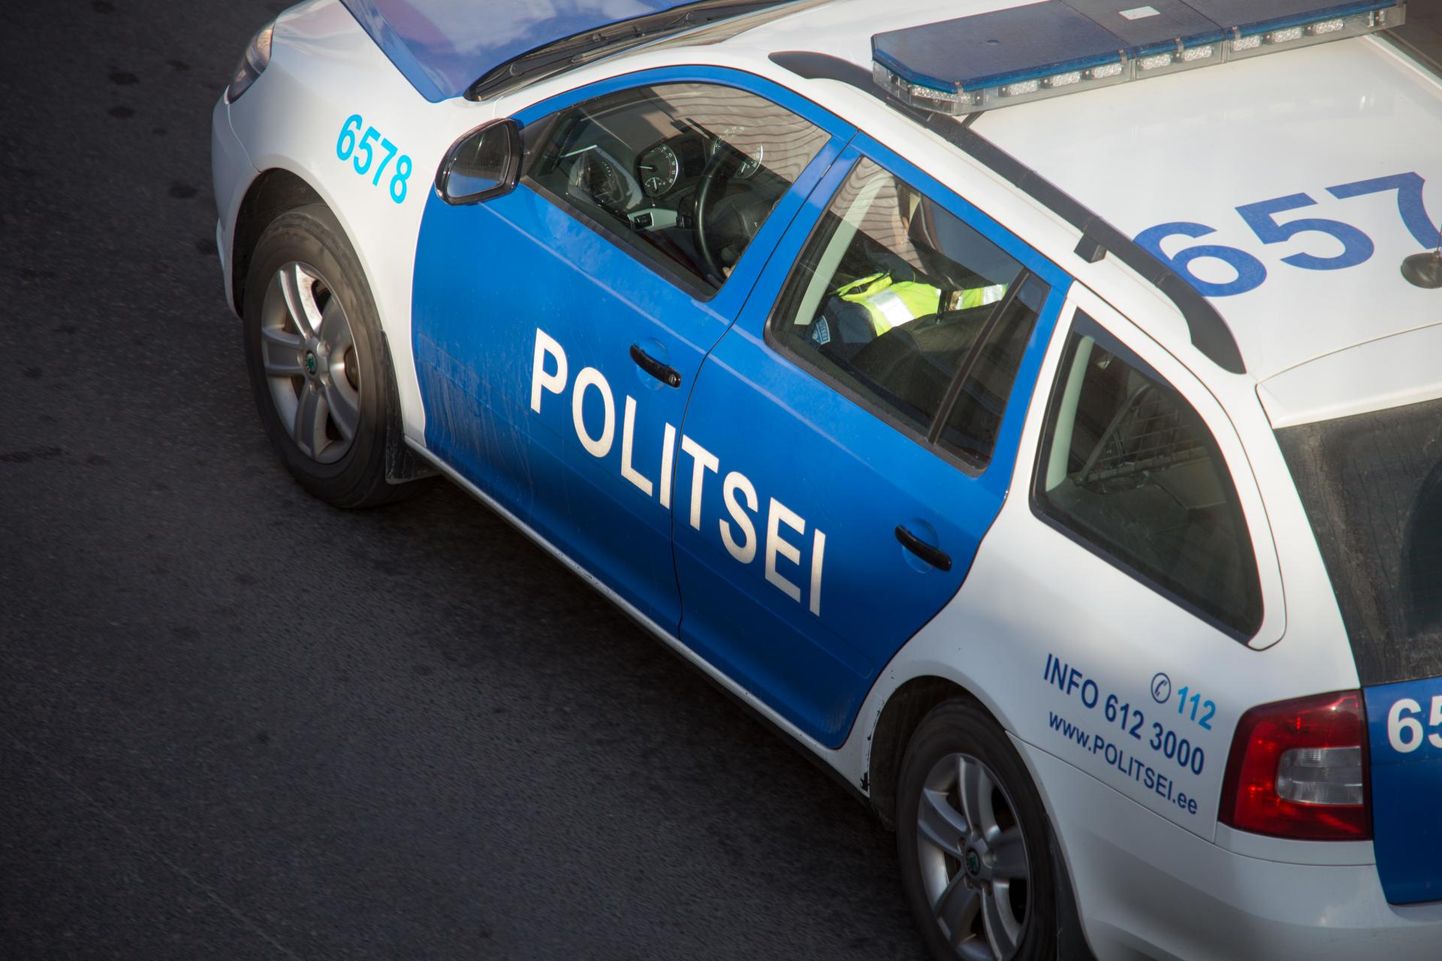 Eile juhtus Rakvere vallas avarii, kus roolis magama jäänud 81-aastane mees sõitis kraavi. Foto on illustratiivne.